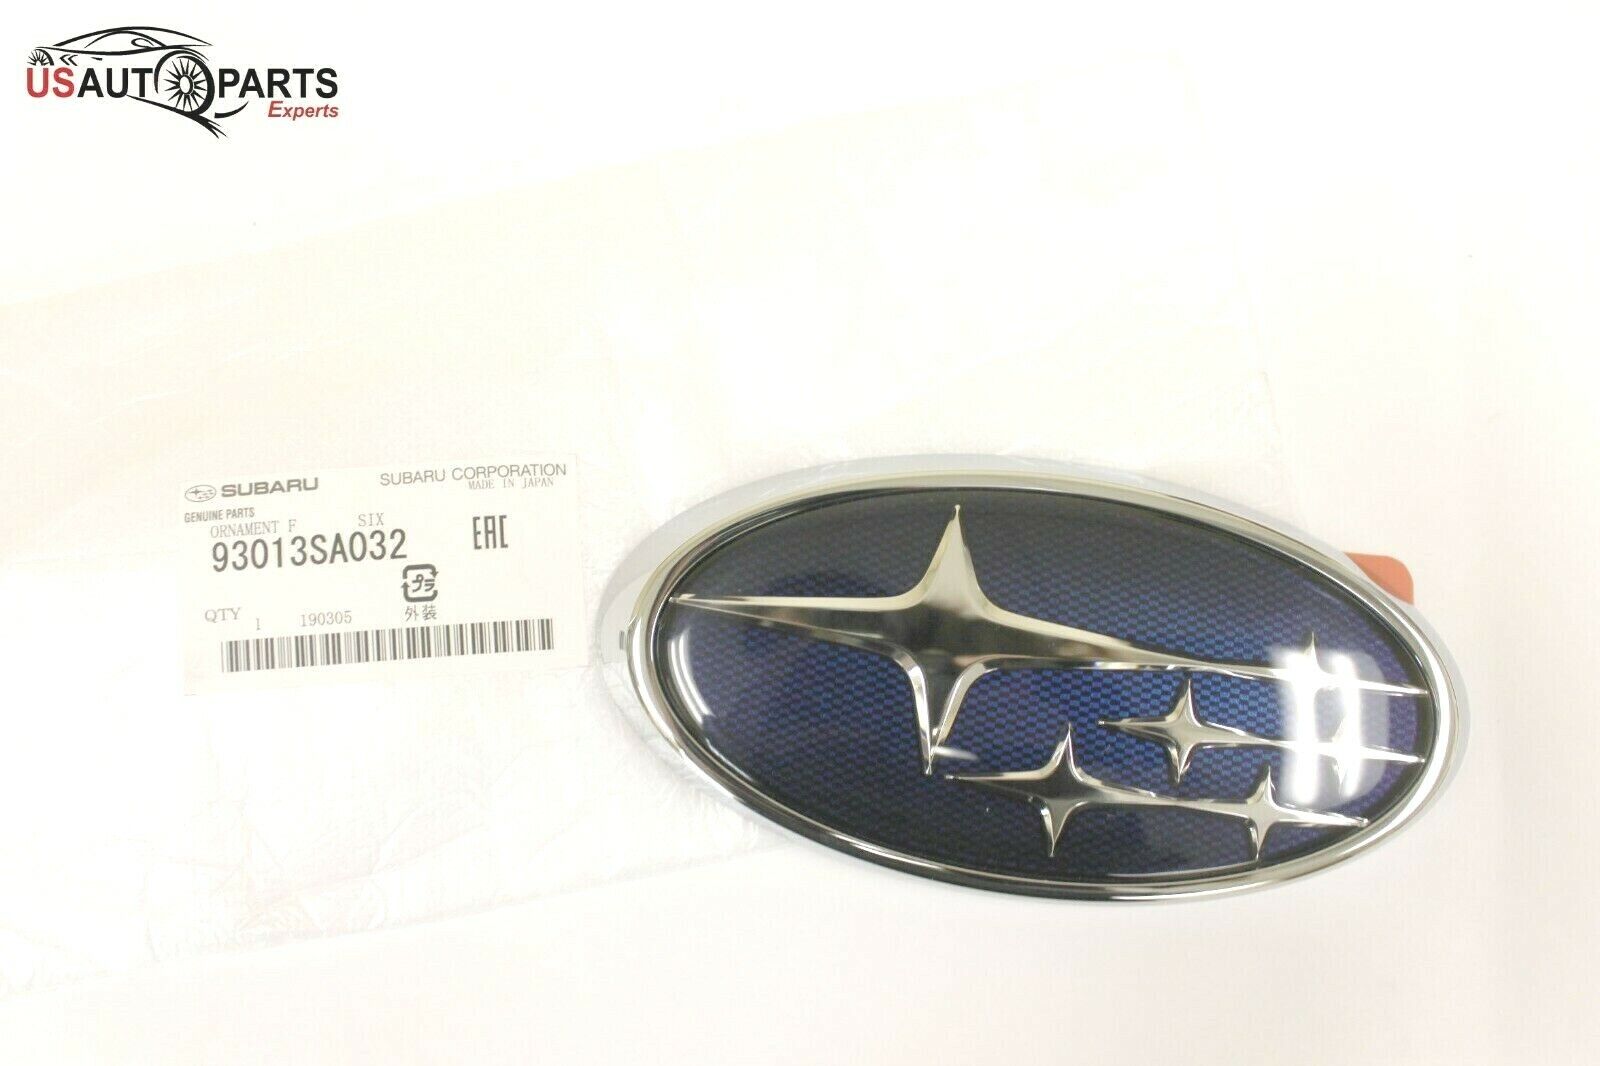 OEM - 2006-2014 - Subaru - Front Star Grille Emblem - Impreza Legacy Forester 